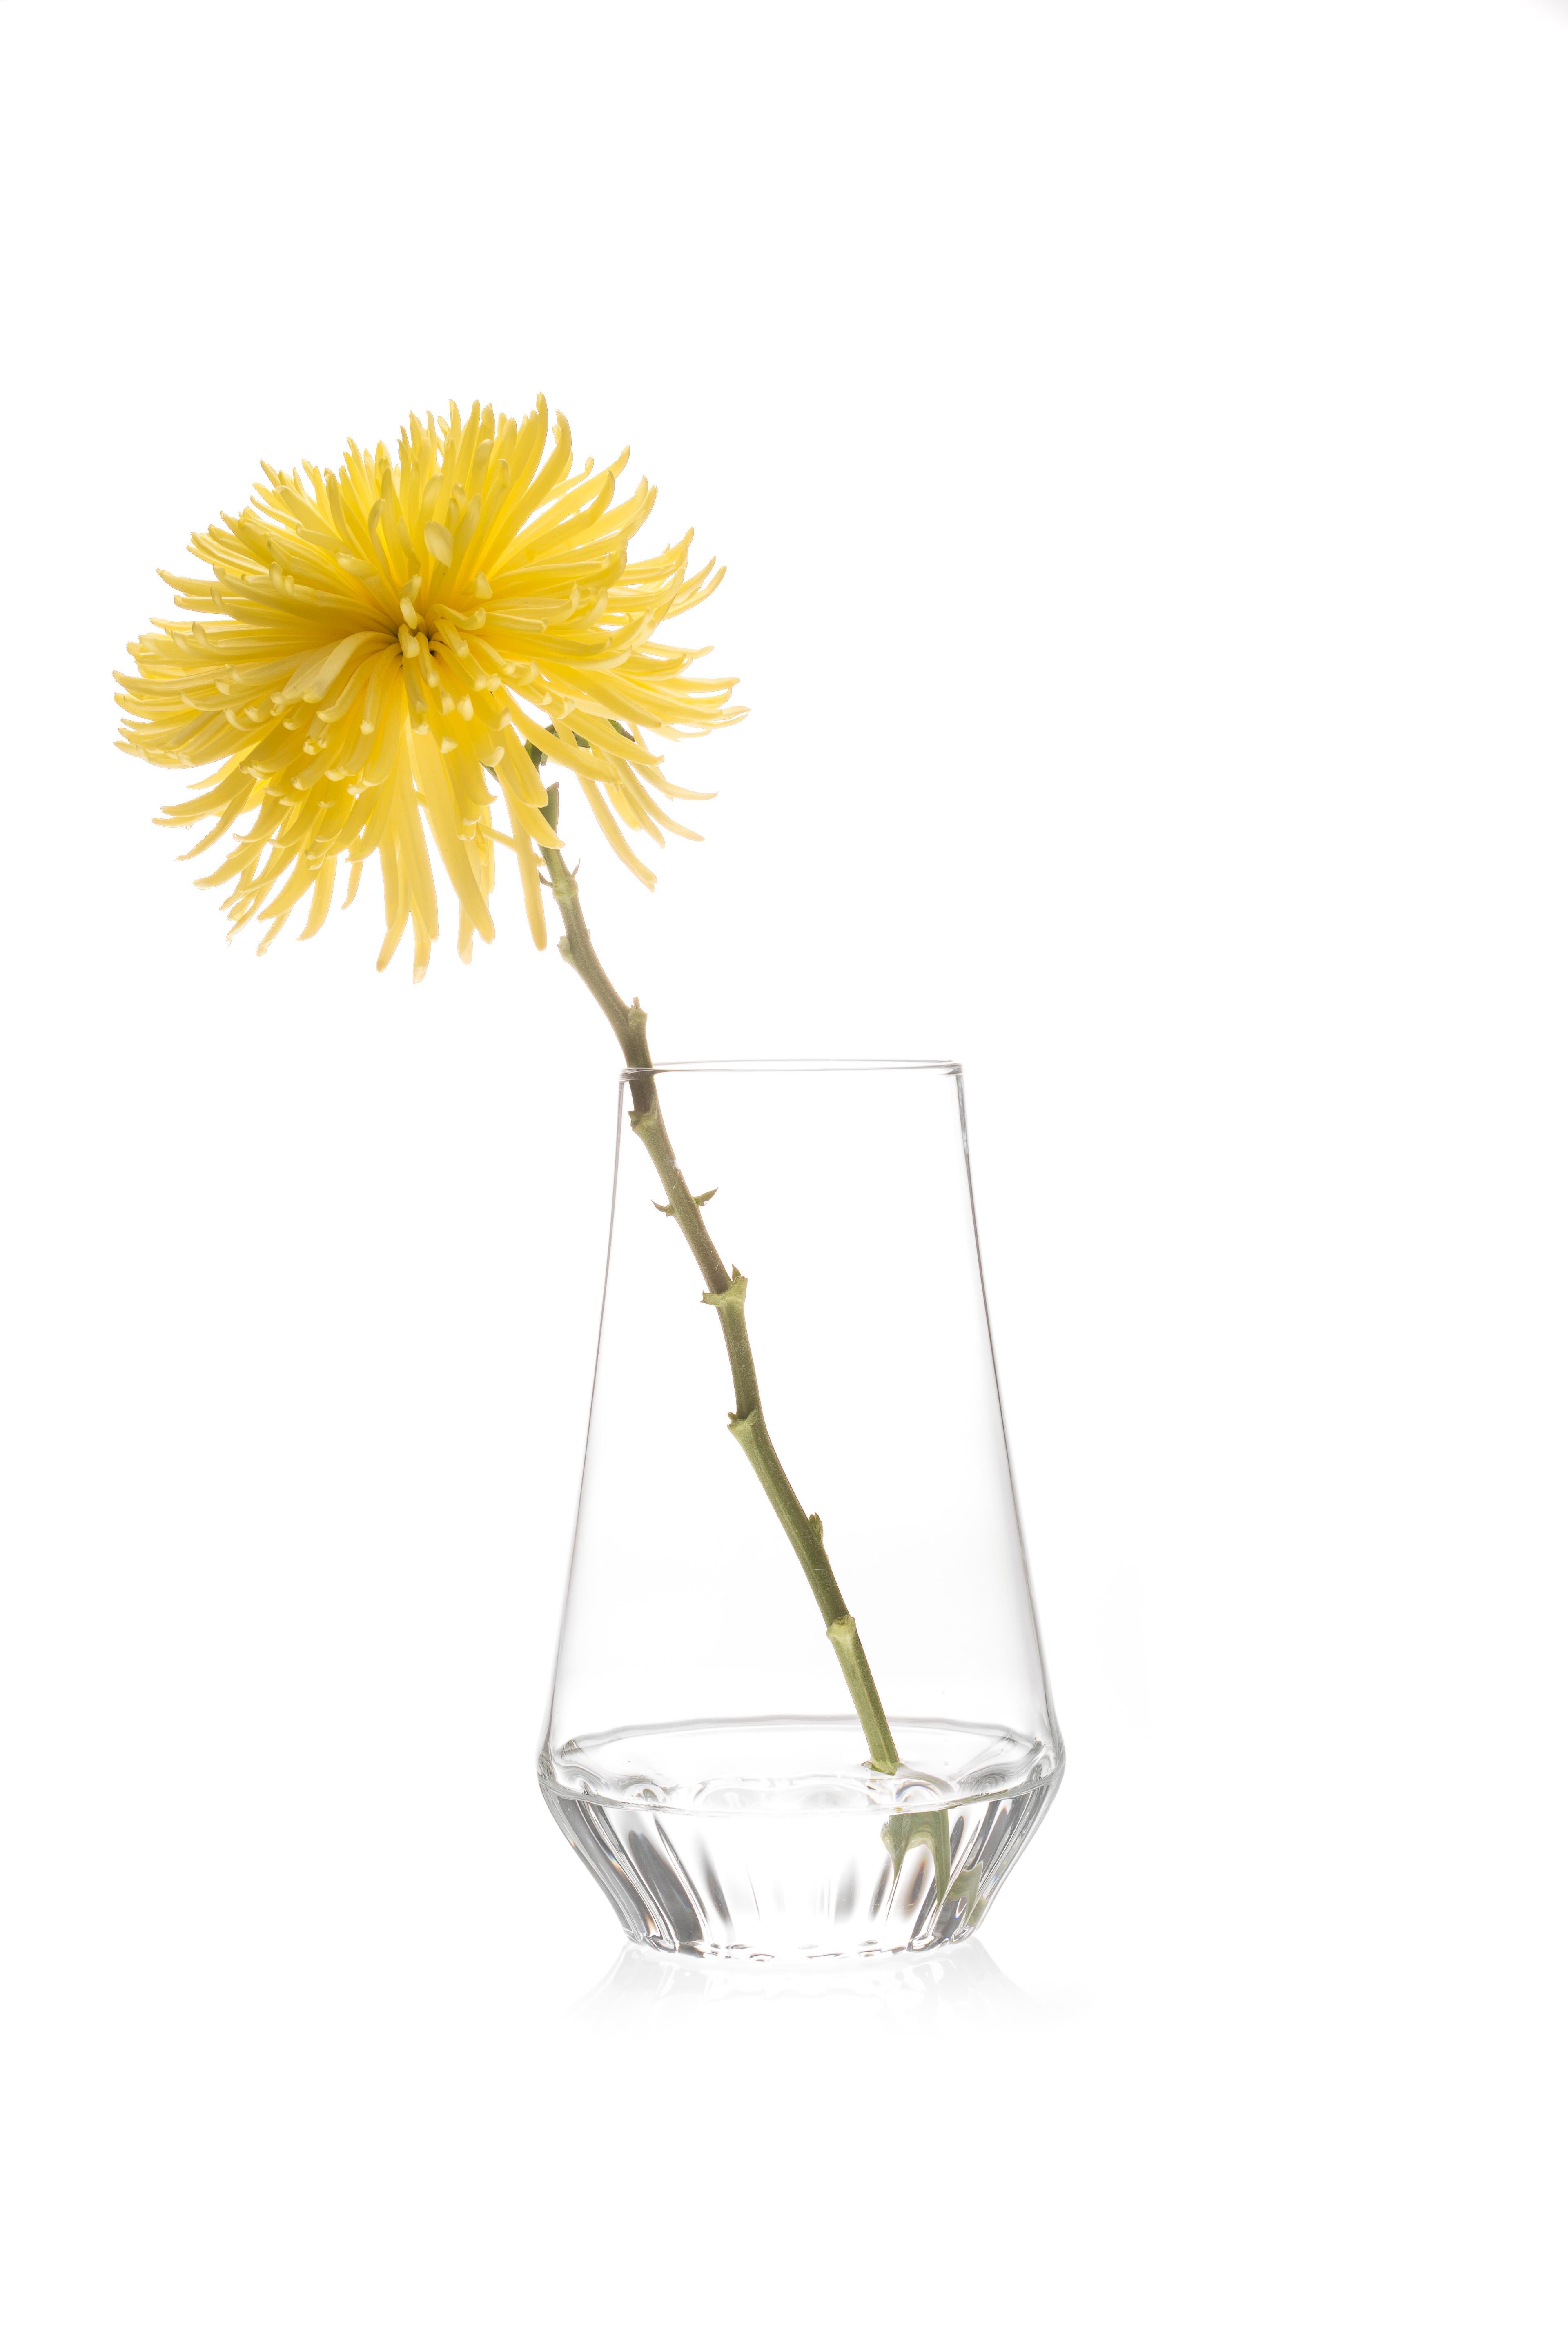 VASE ROSSI GRAND 

Qu'il s'agisse d'une simple tige ou d'un bouquet, le verre transparent met en valeur la tige de la fleur, la célébrant comme partie intégrante de la composition. L'effet lenticulaire du verre cannelé au niveau de la
Le fond masque